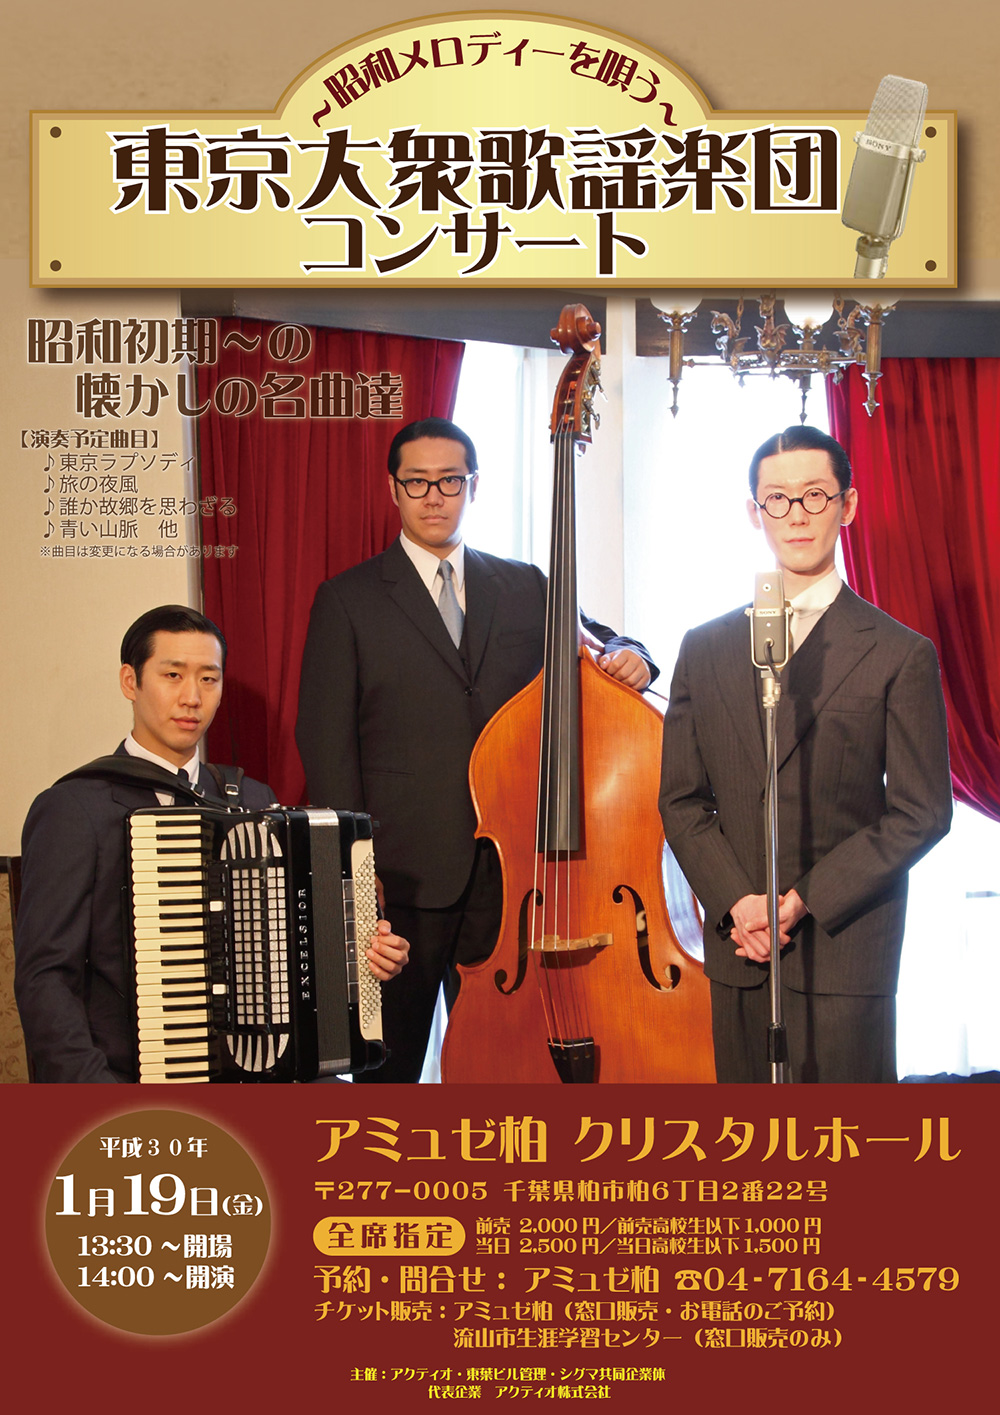 東京 大衆 歌謡 楽団 の スケジュール